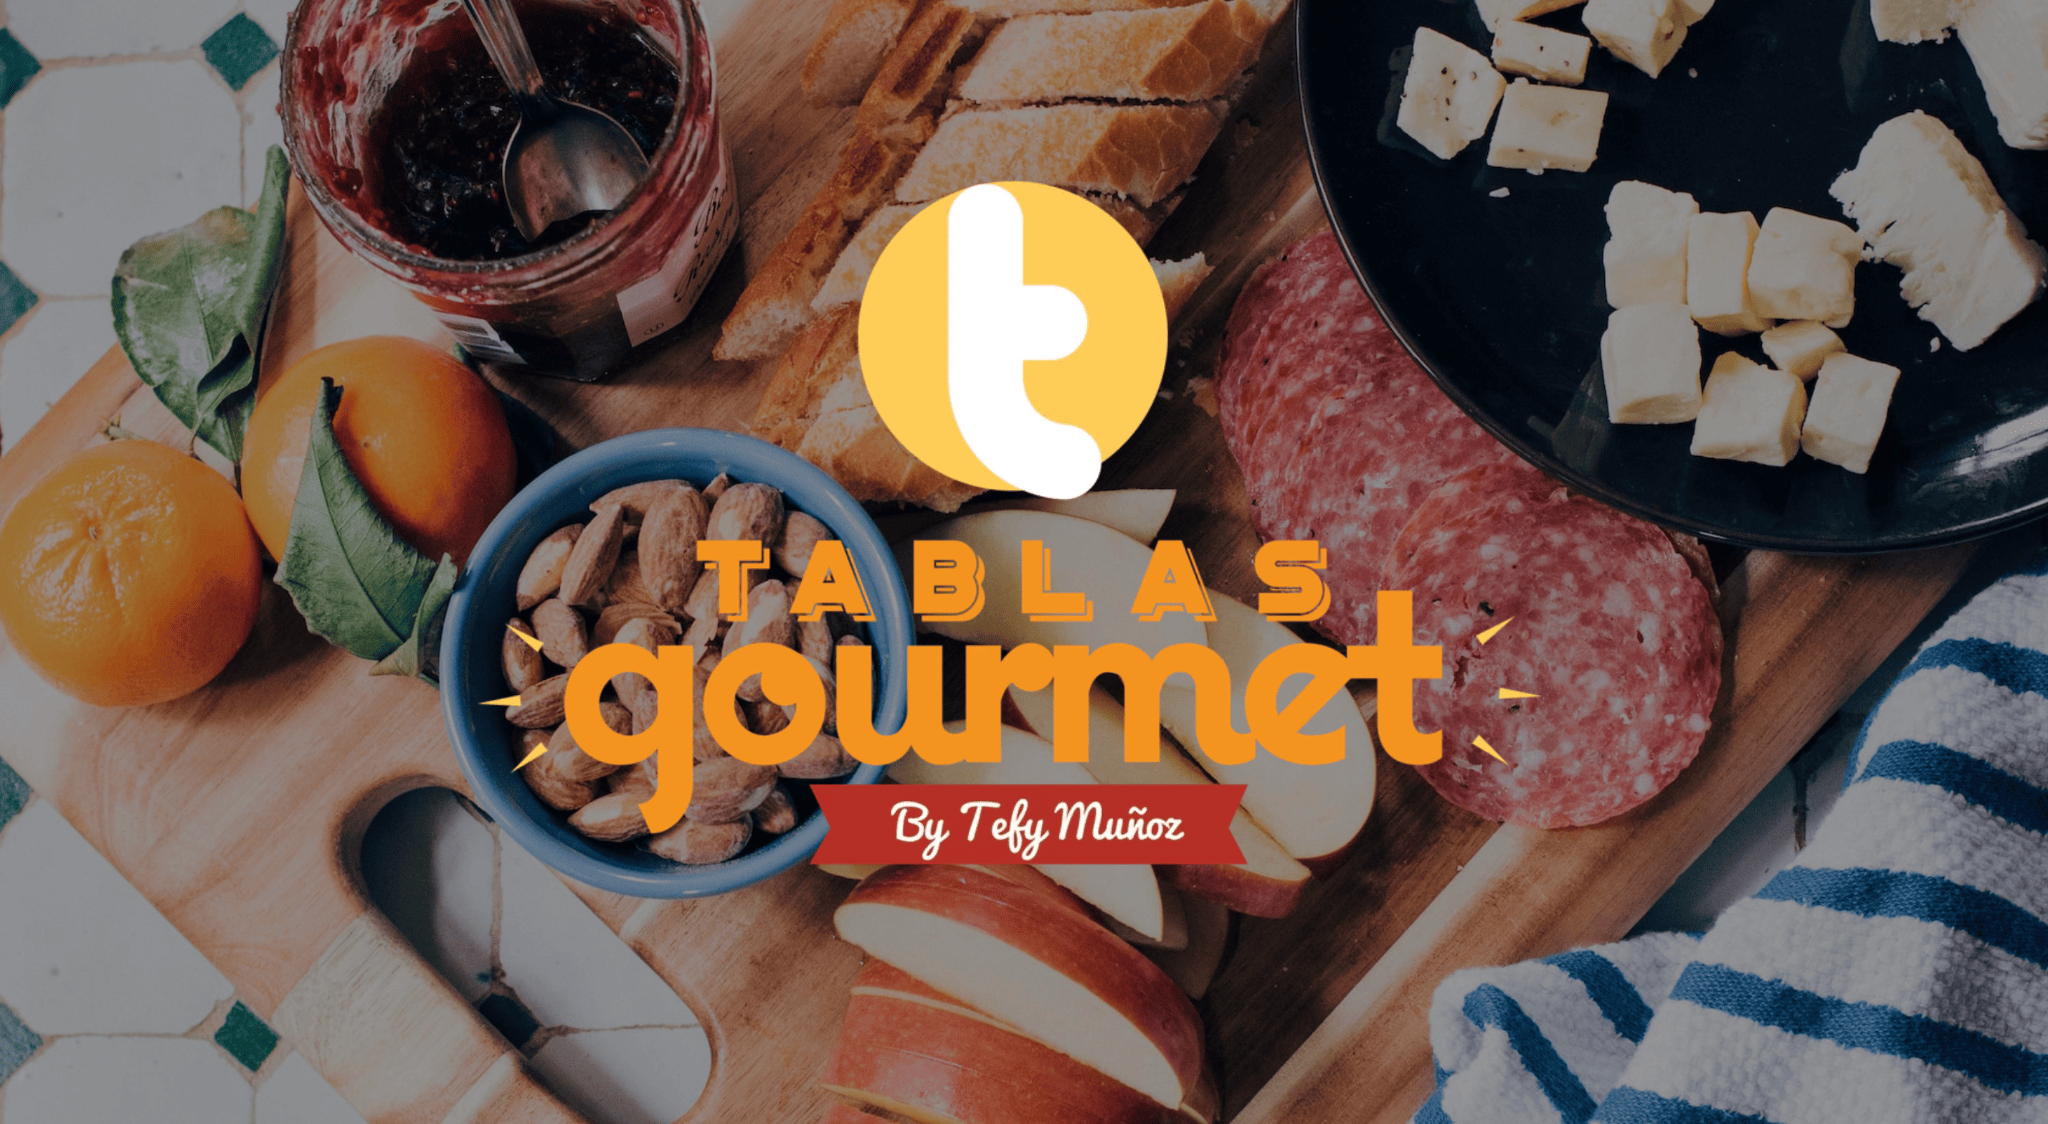 efektownie jednostronicowa witryna internetowa - tablas gourmet